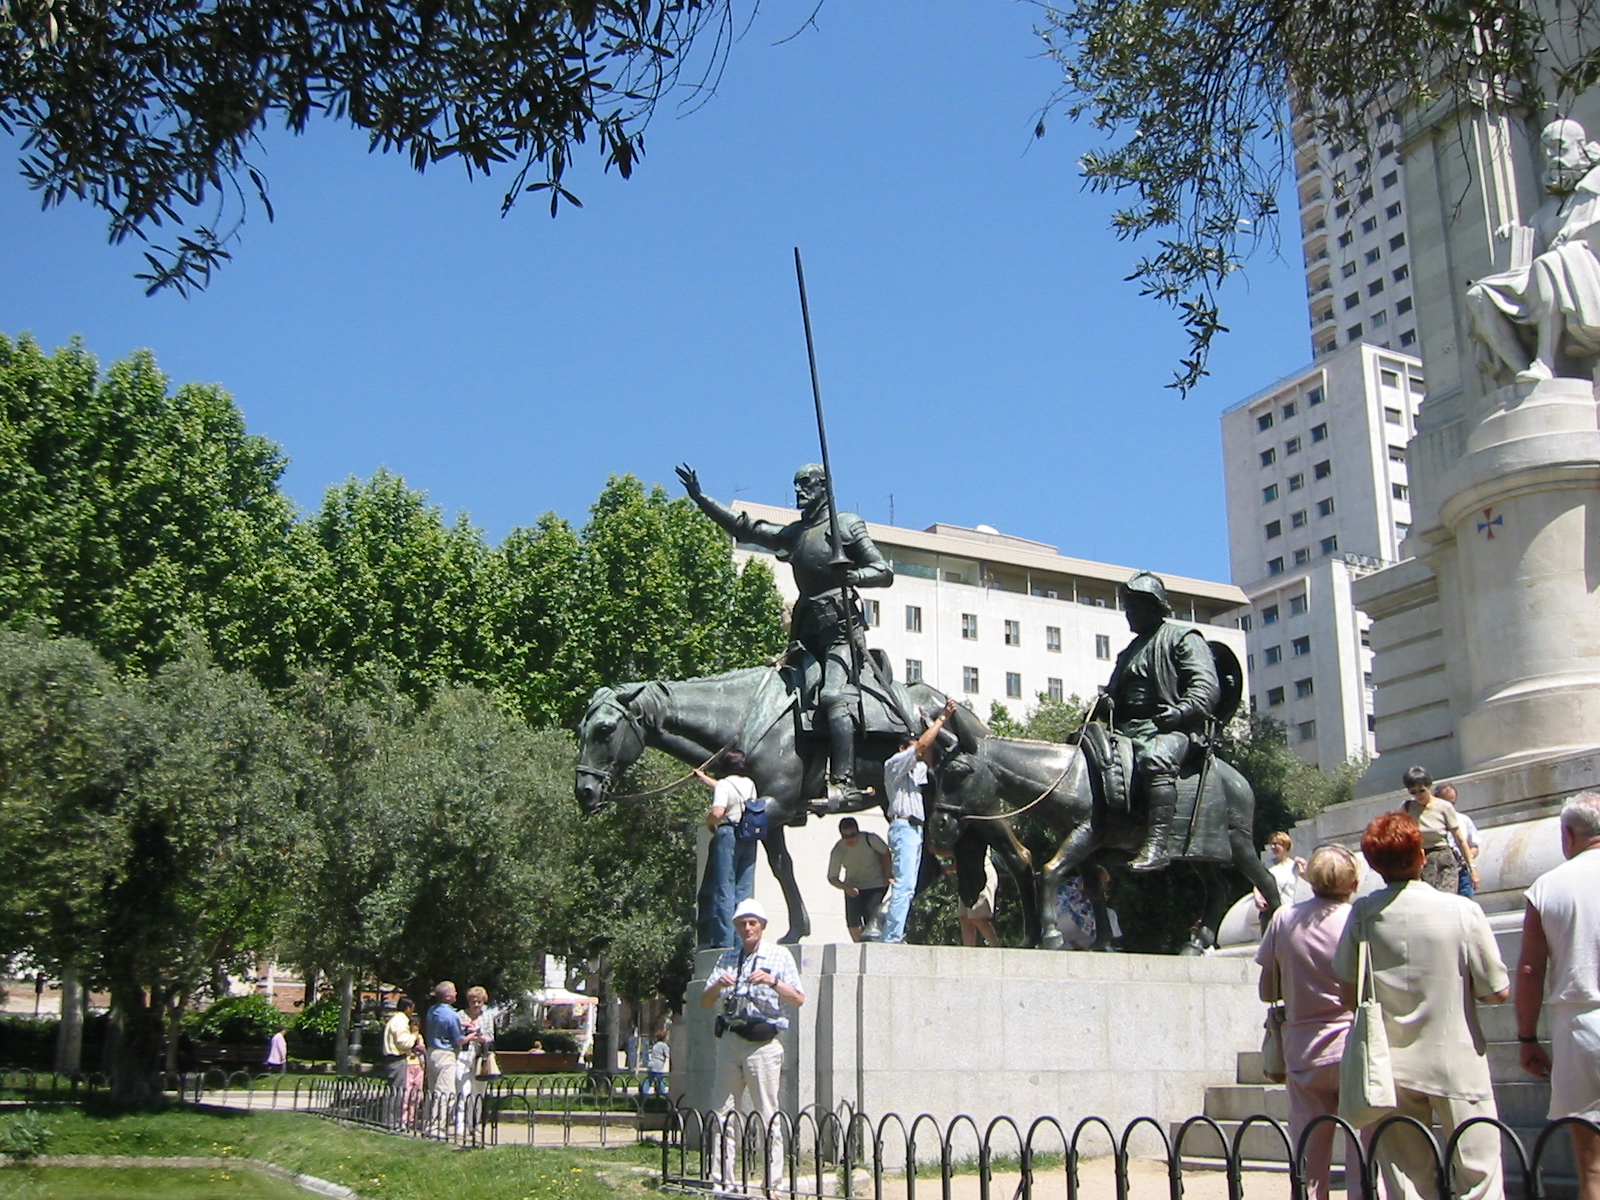 Pomnik Serwantesa na Plaza de Espana